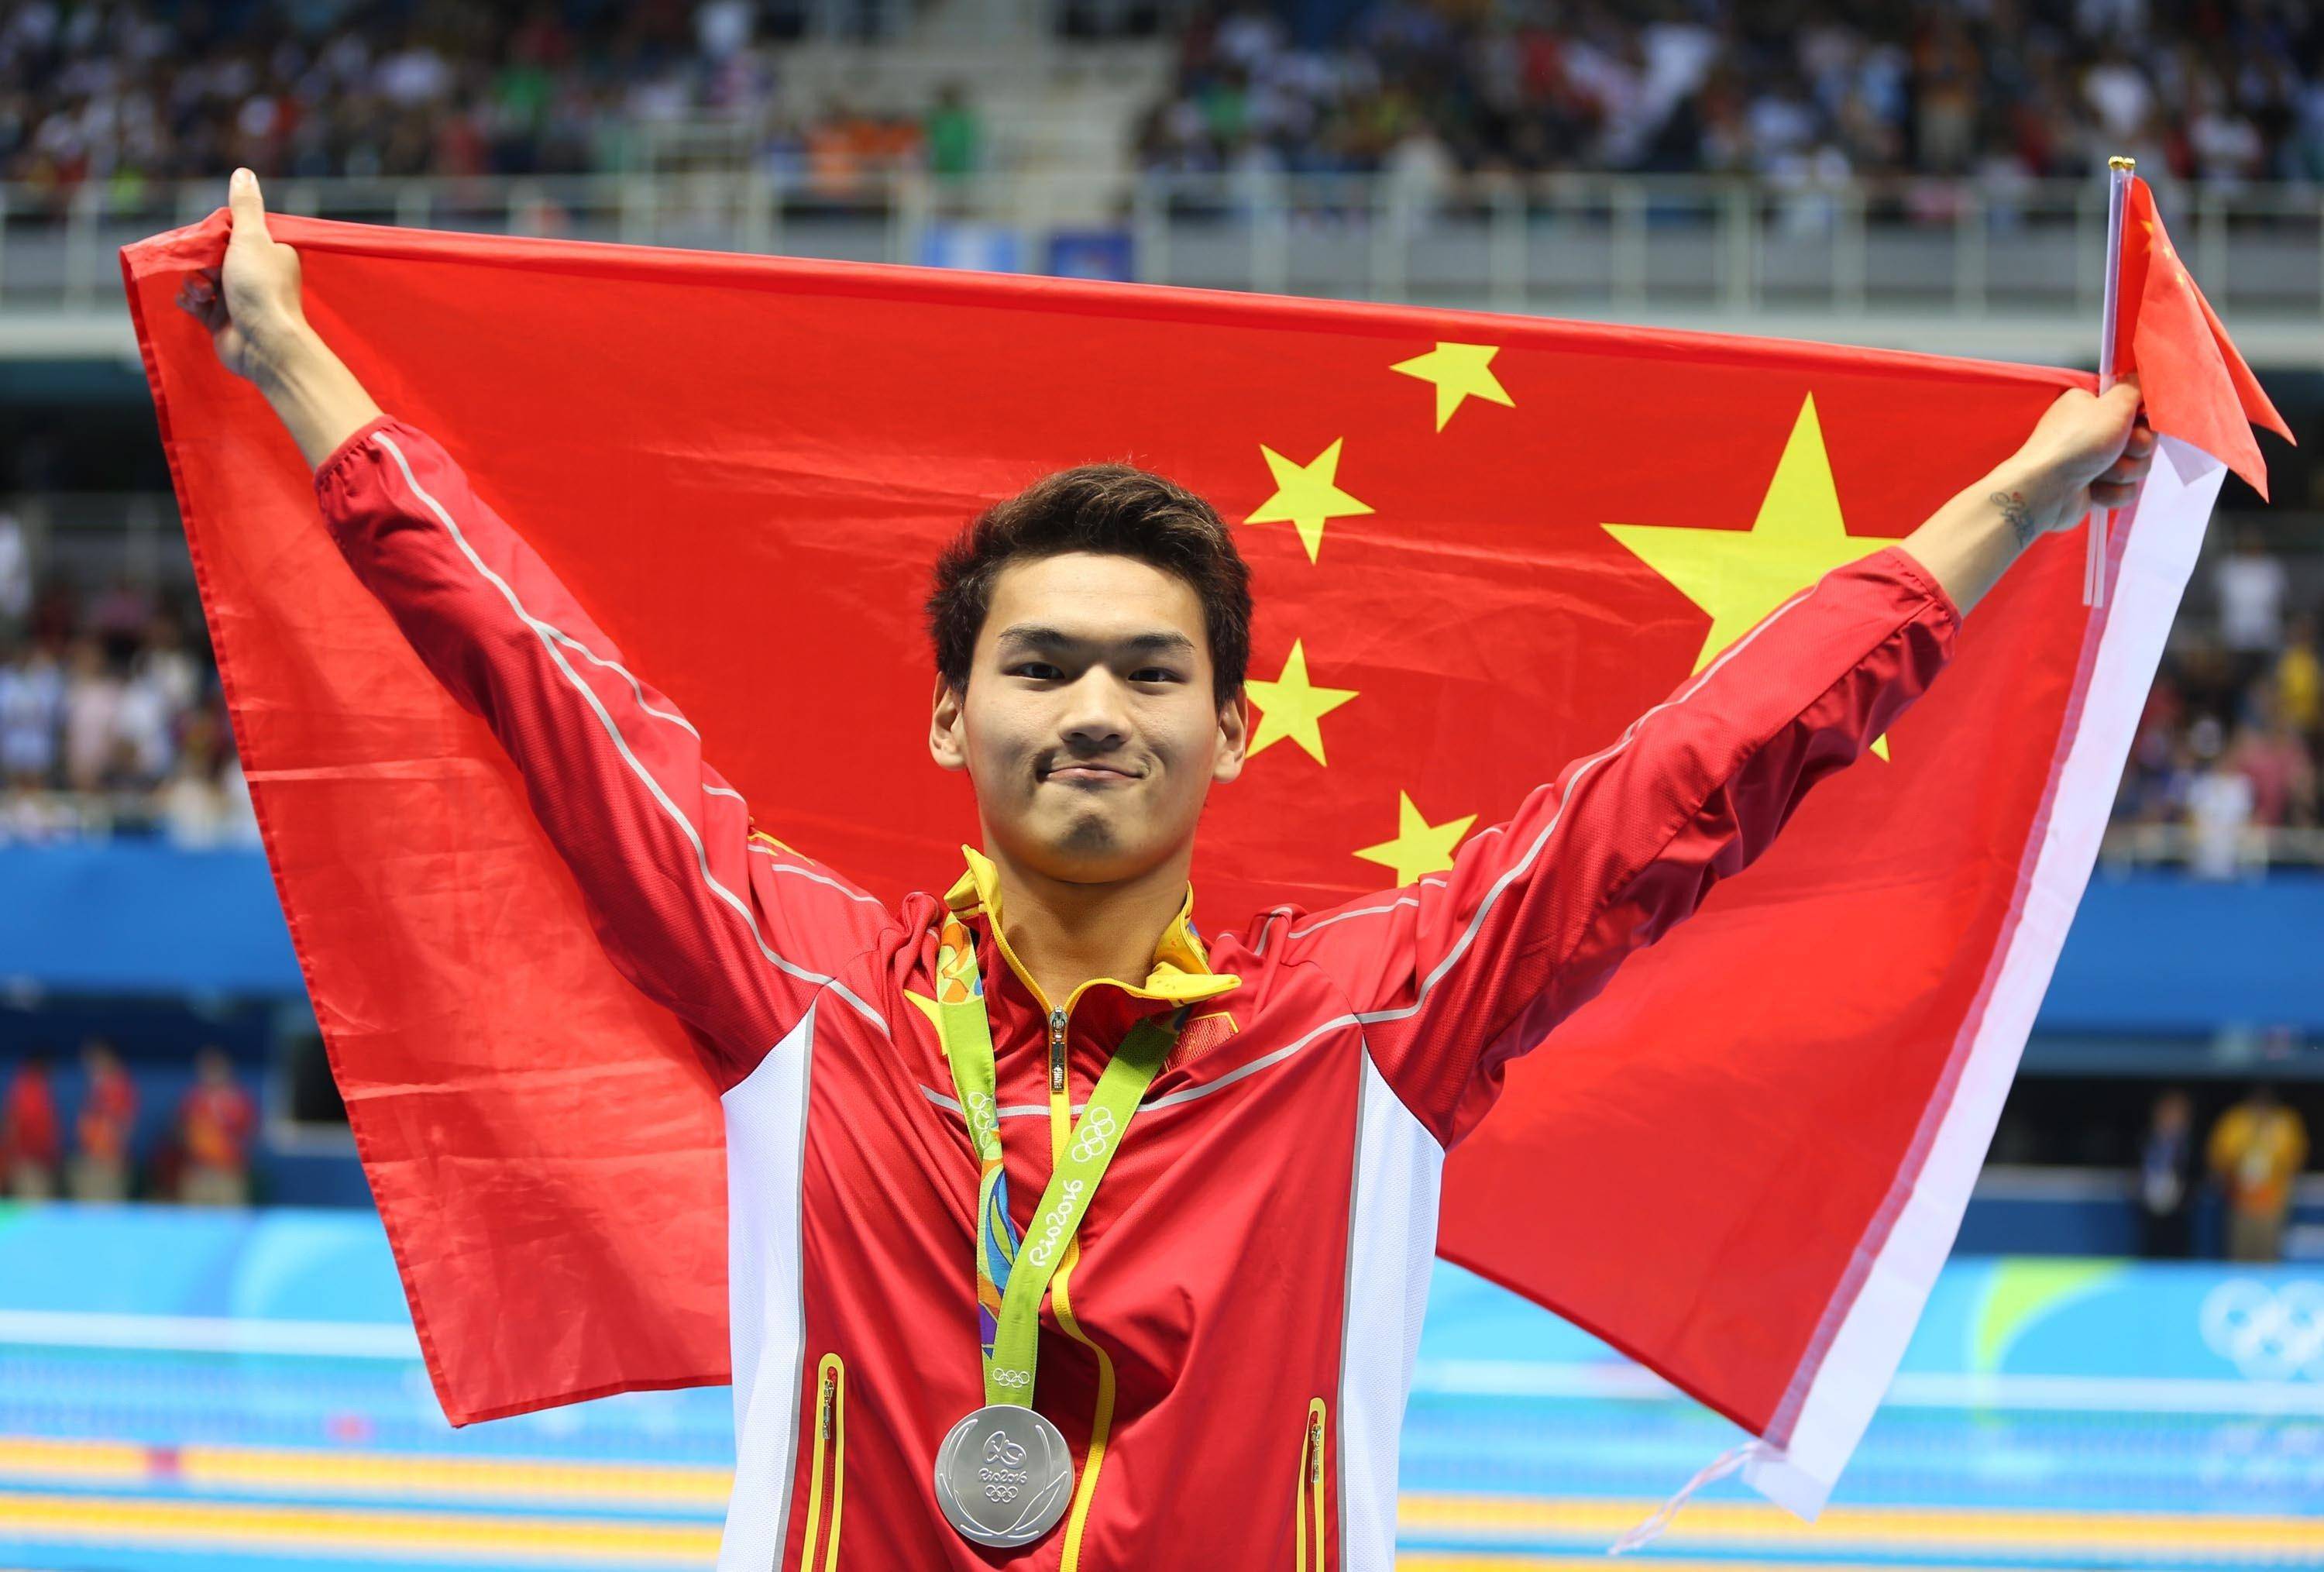 中国游泳选拔赛确定,孙杨能否参赛成疑?听证会结果奥运前难出